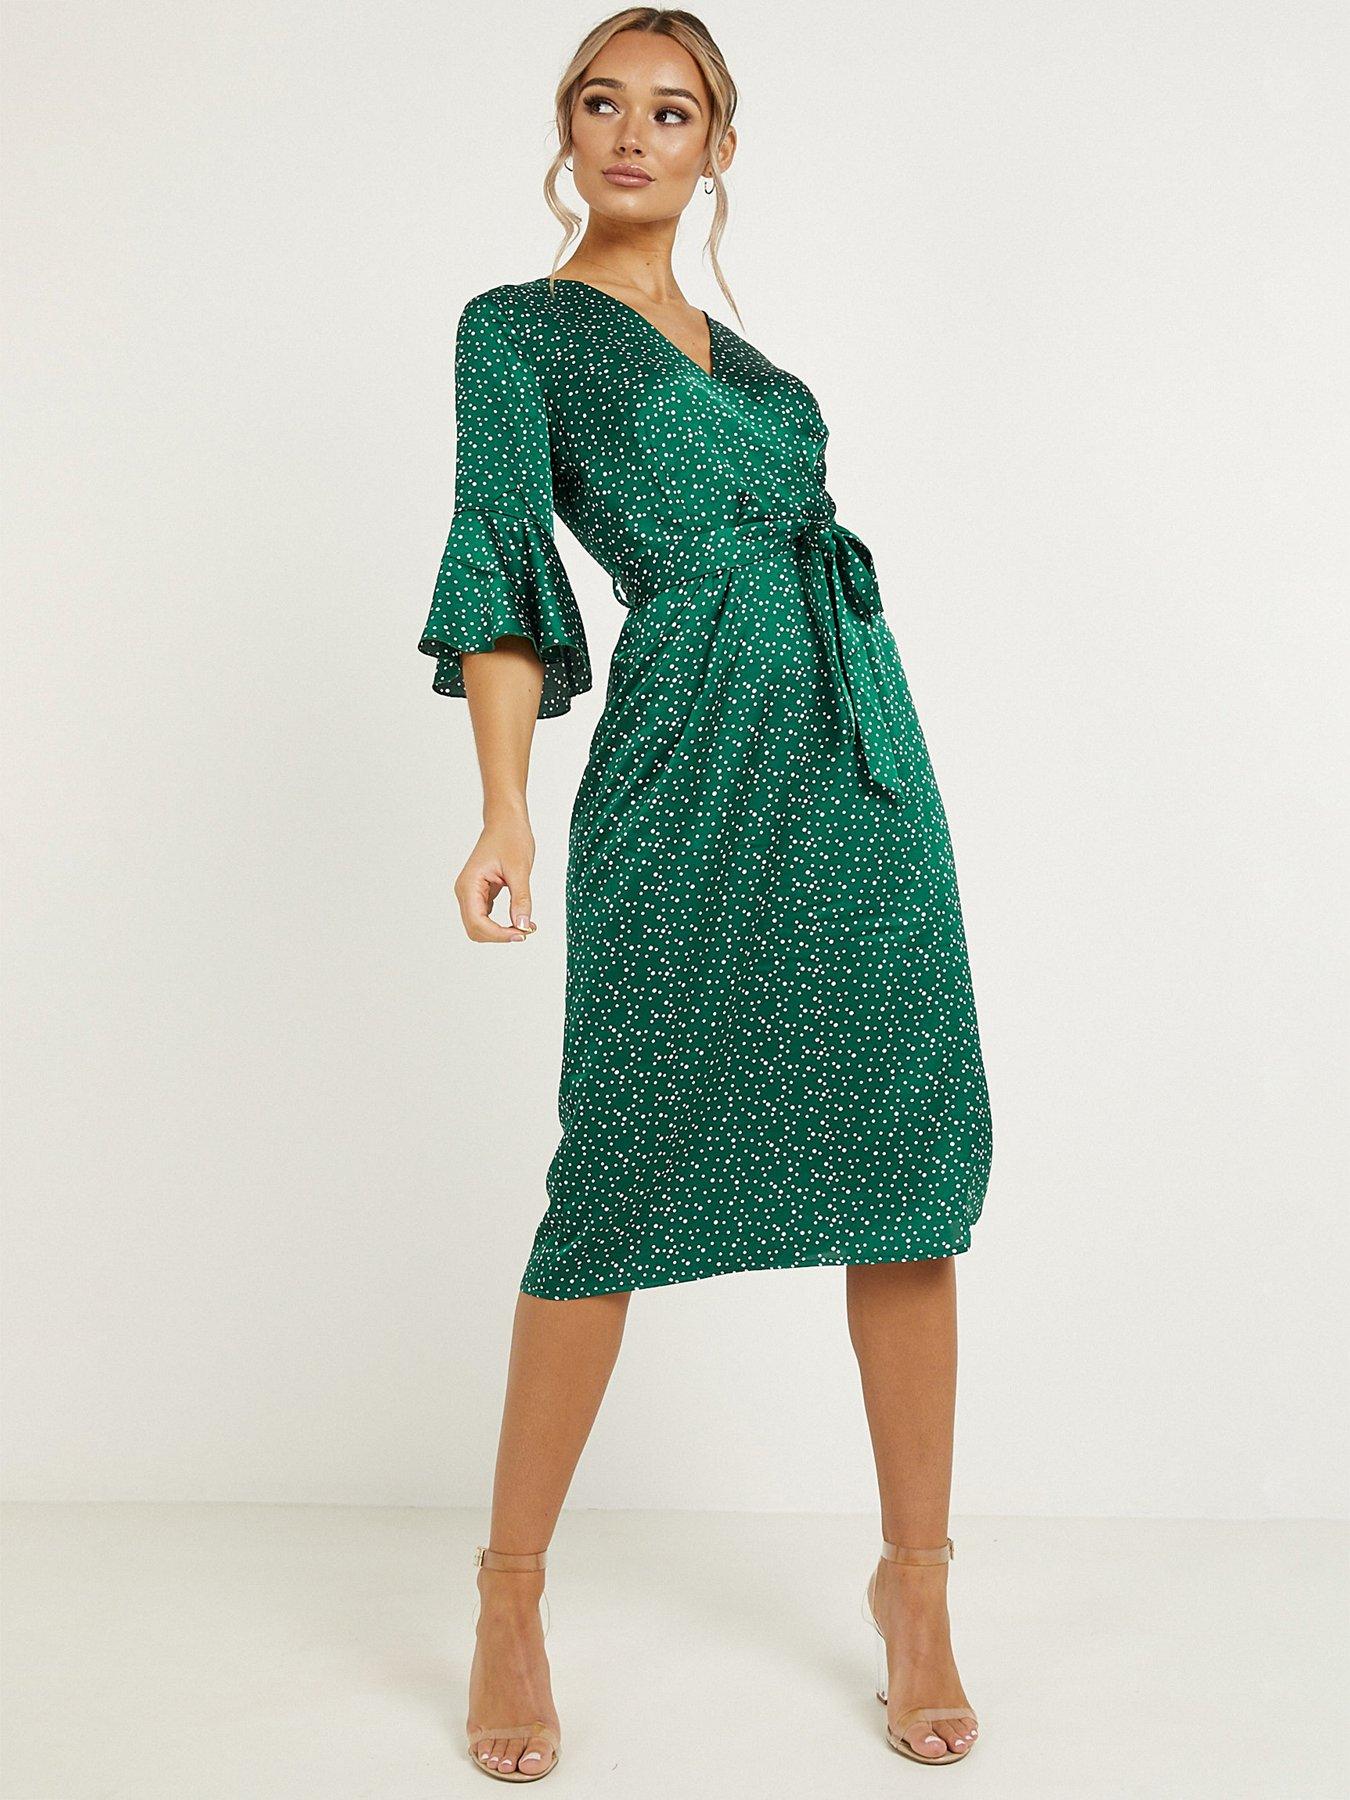 littlewoods green dress